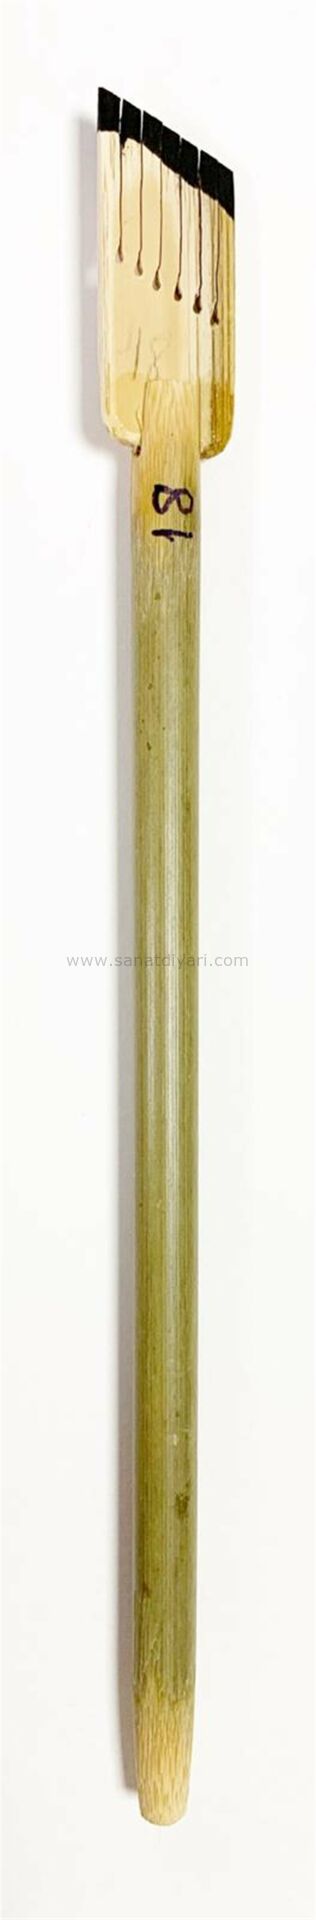 Tiryakiart Şaklı Bambu Kalem 18 mm